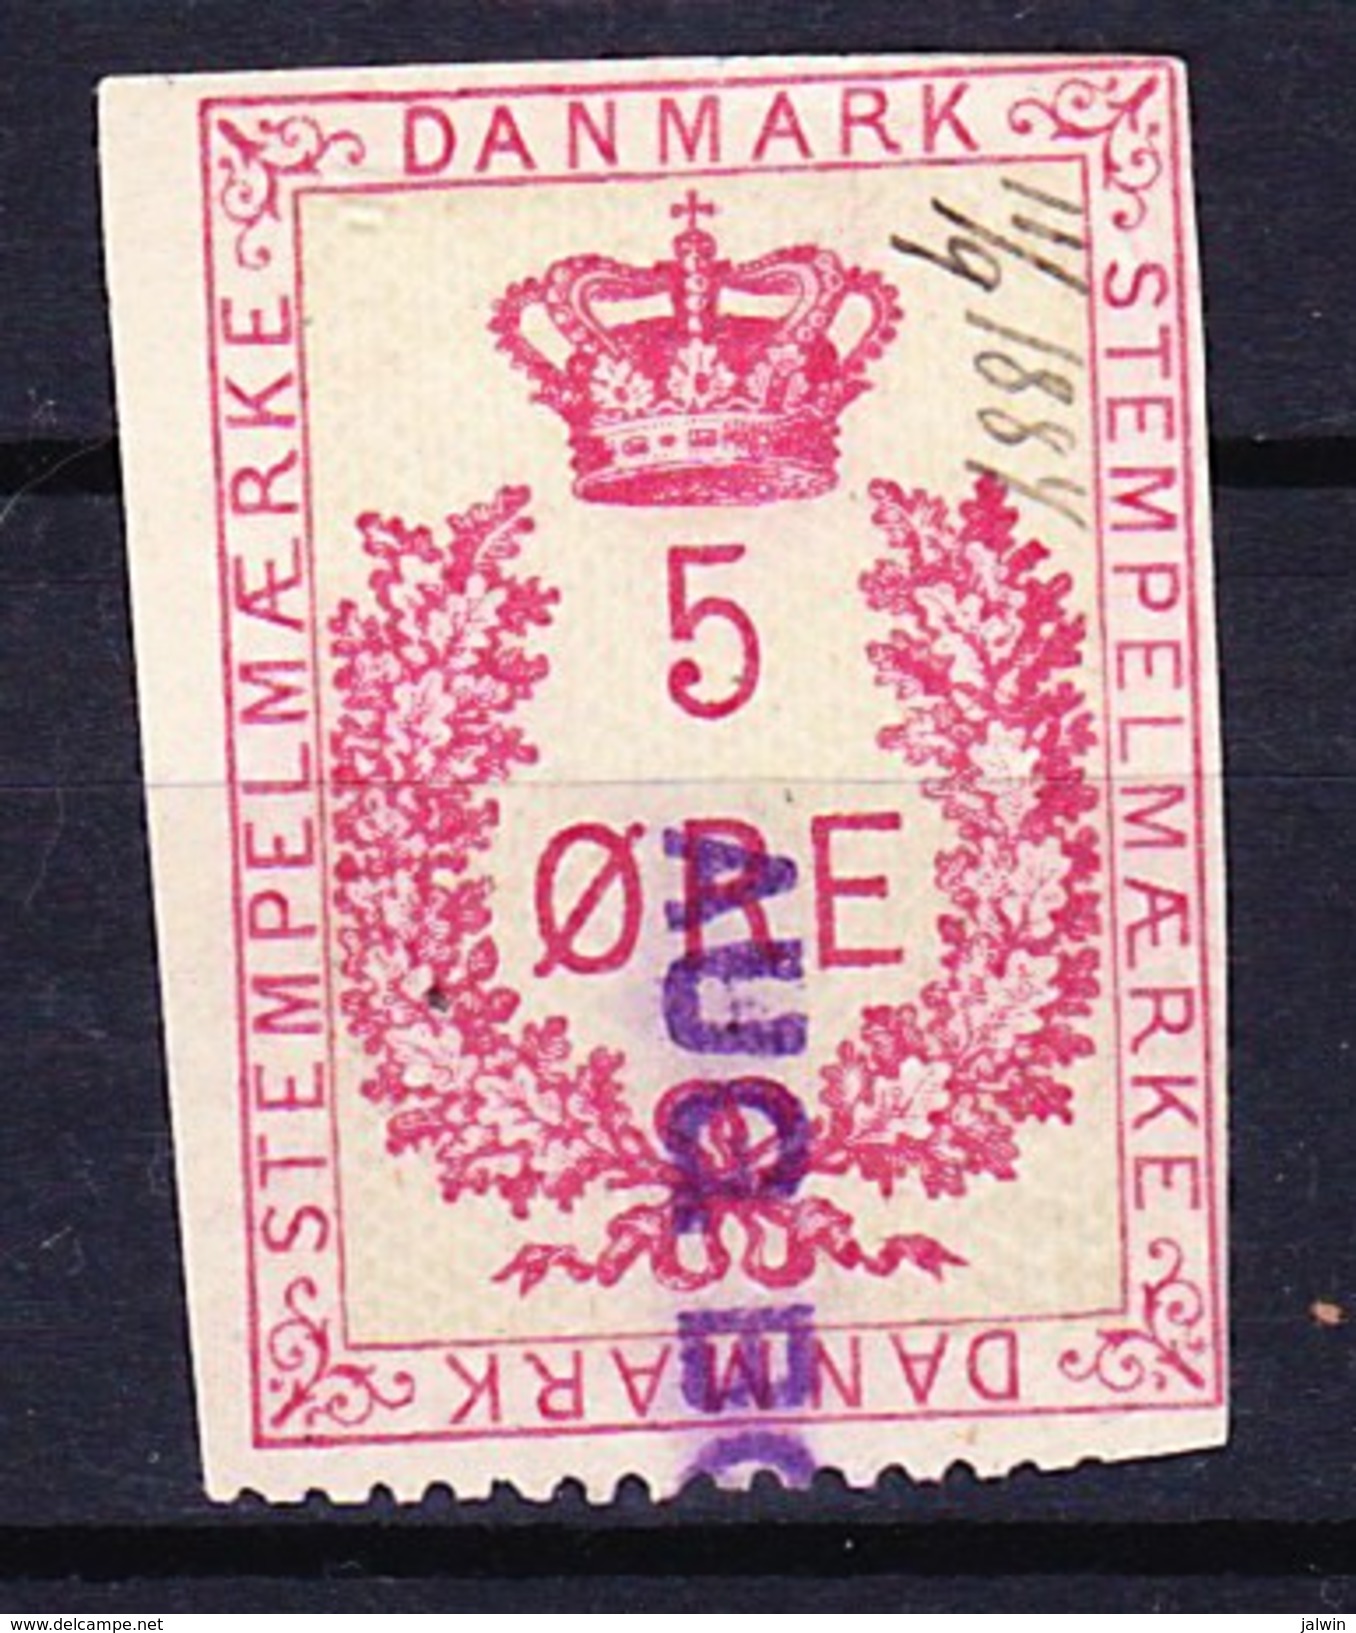 DANEMARK FISCAUX - STEMPELMAERKE 5 ORE ROUGE 11-09-1884 - Steuermarken